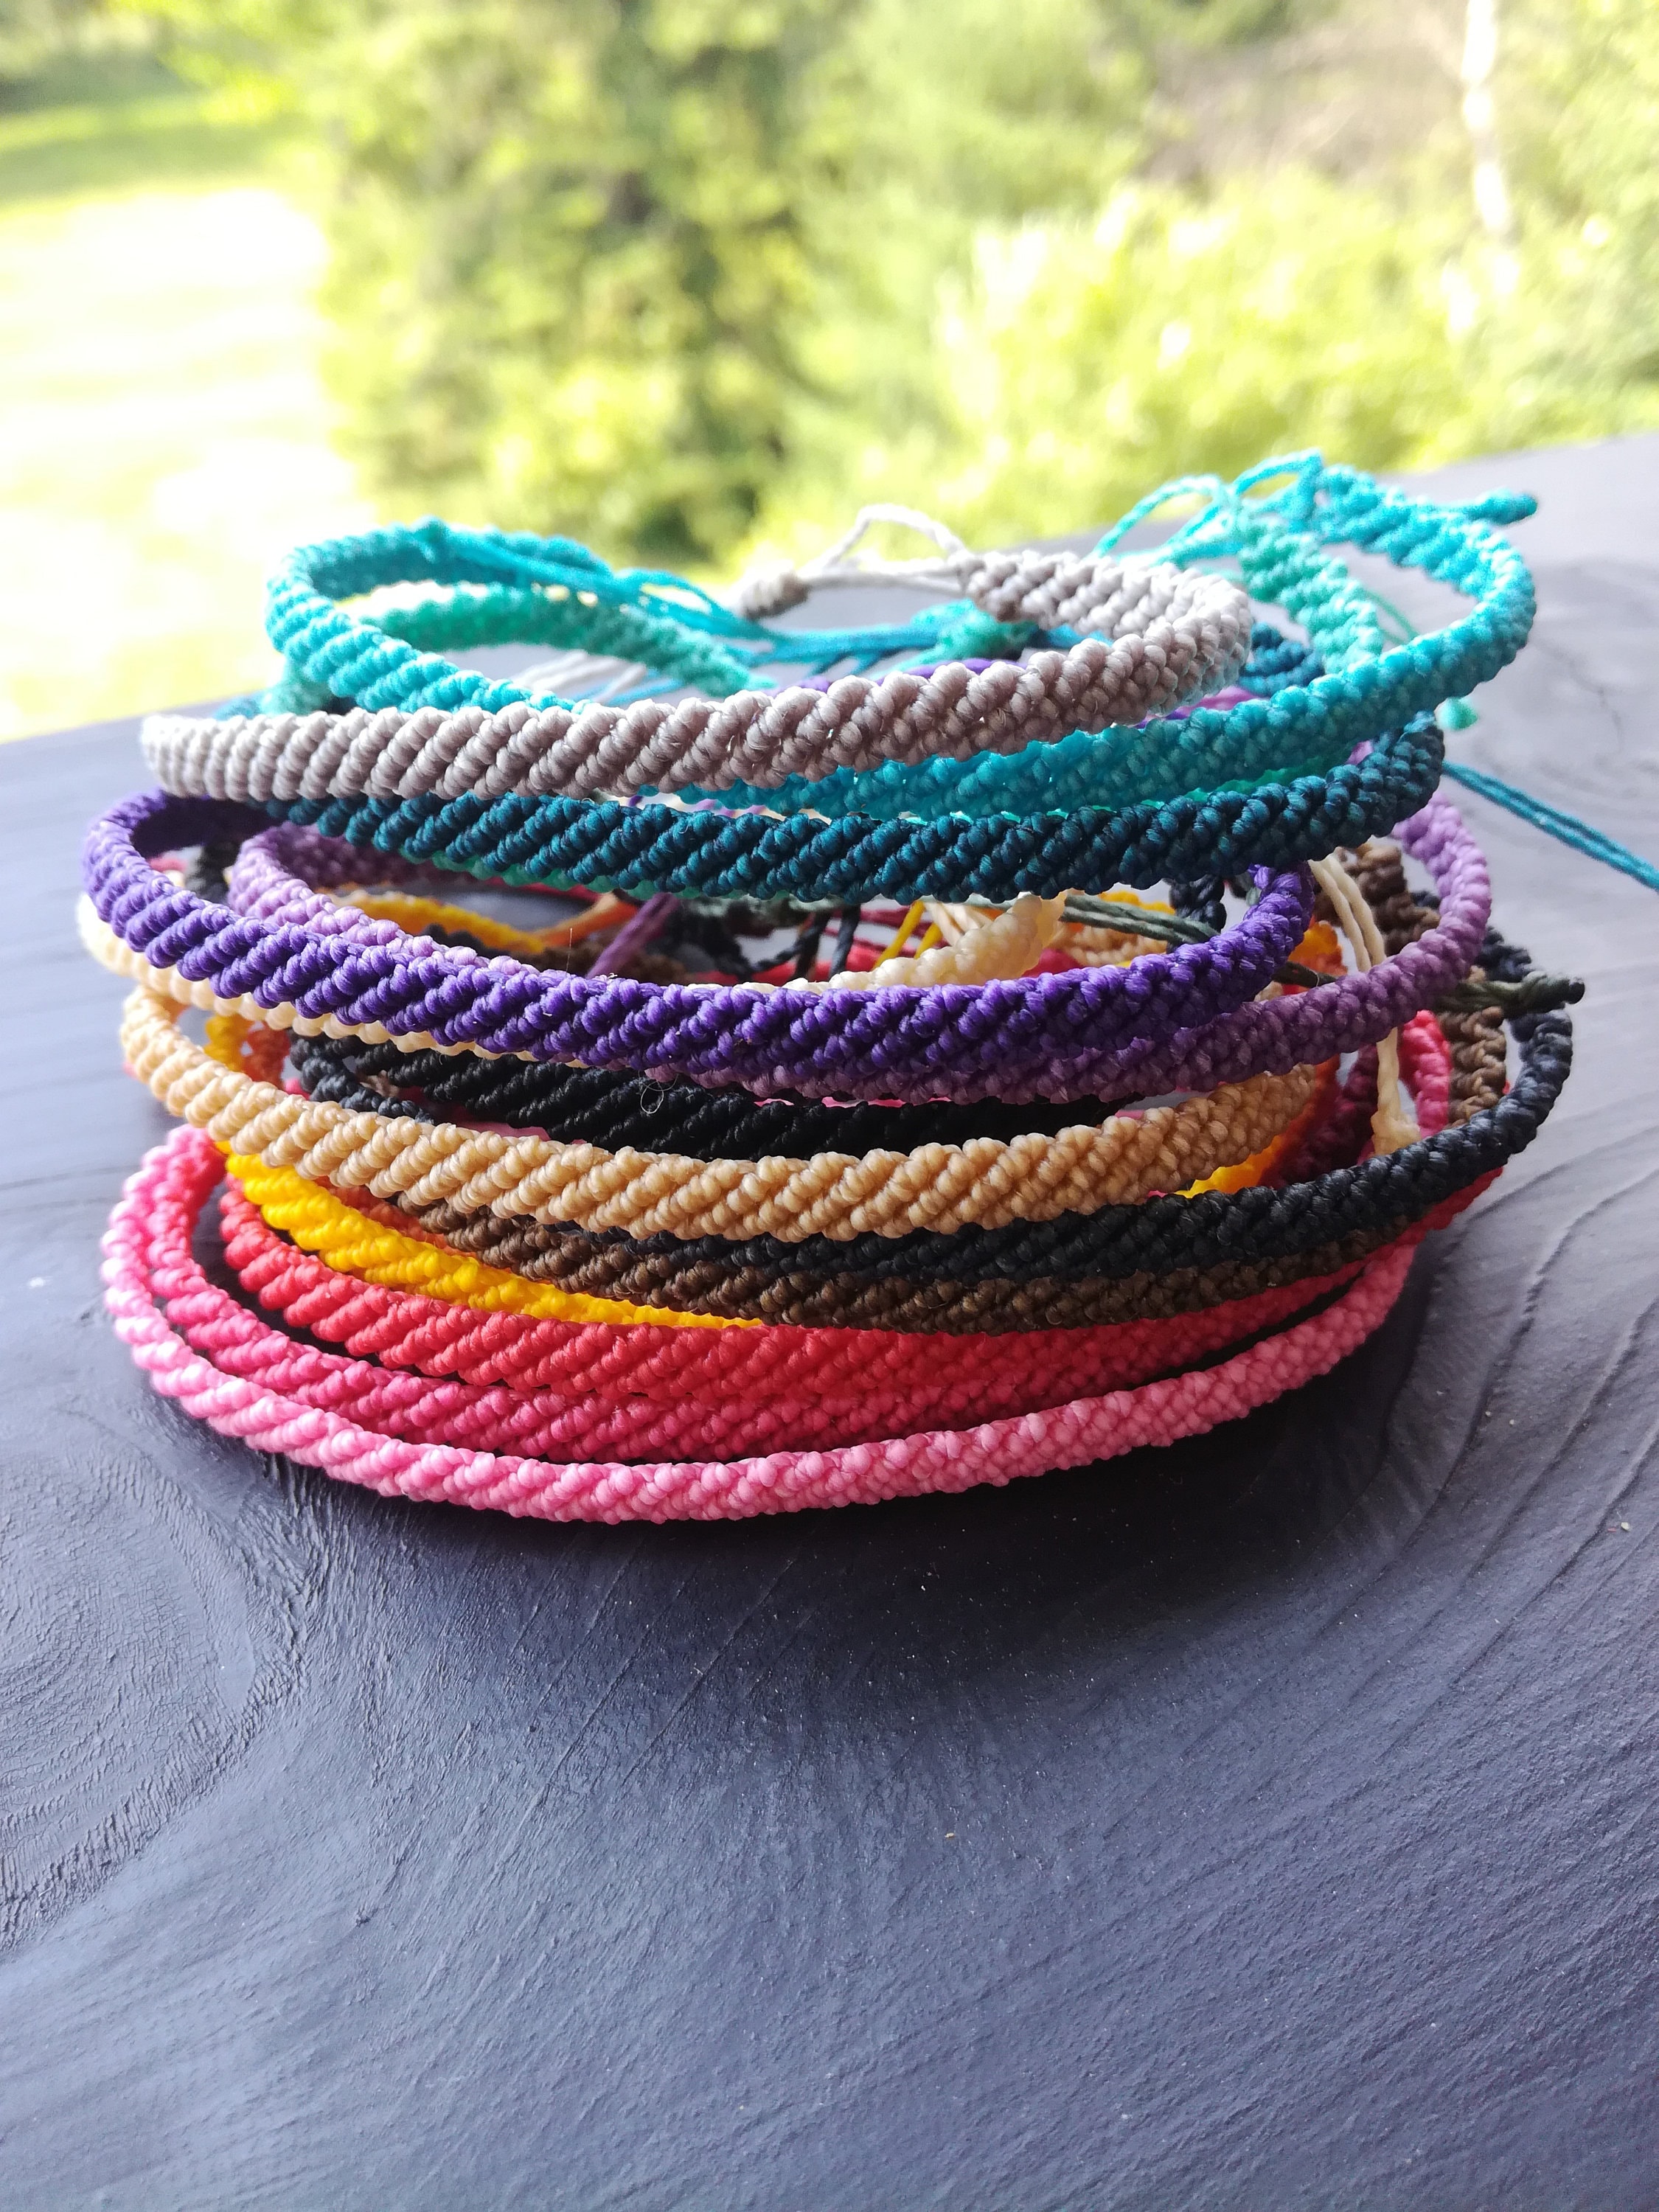 Wax String bracelets, waterproof adjustable wax string bracelets